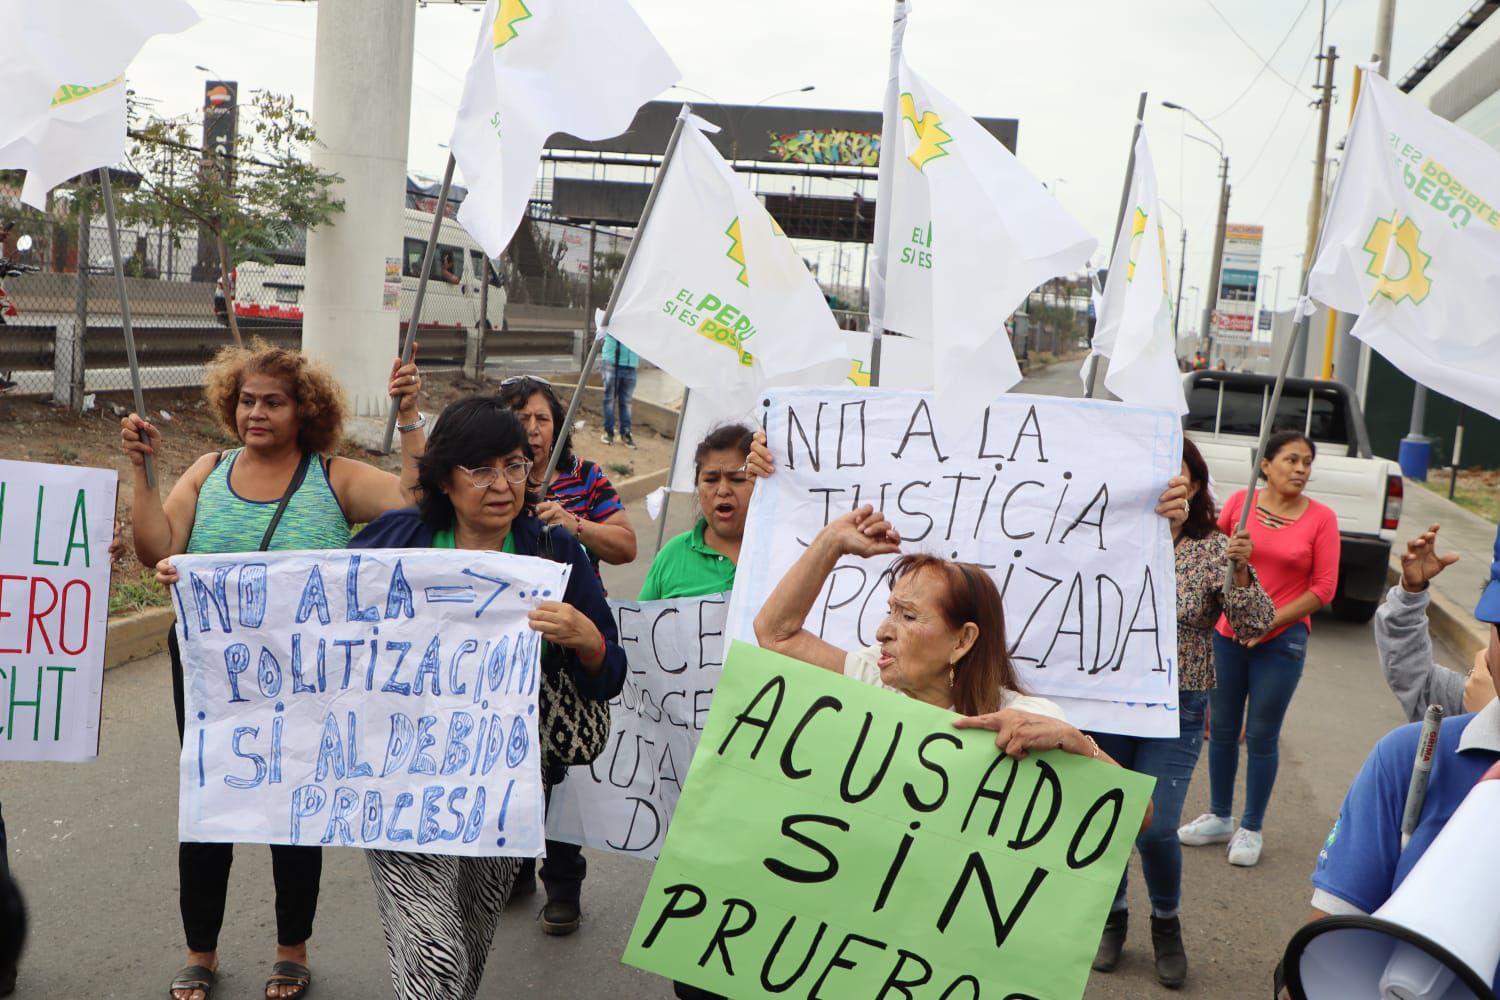 "Acusado sin pruebas", es la frase que se puede leer en algunos de los carteles en apoyo a Alejandro Toledo | Paula Díaz - Infobae Perú